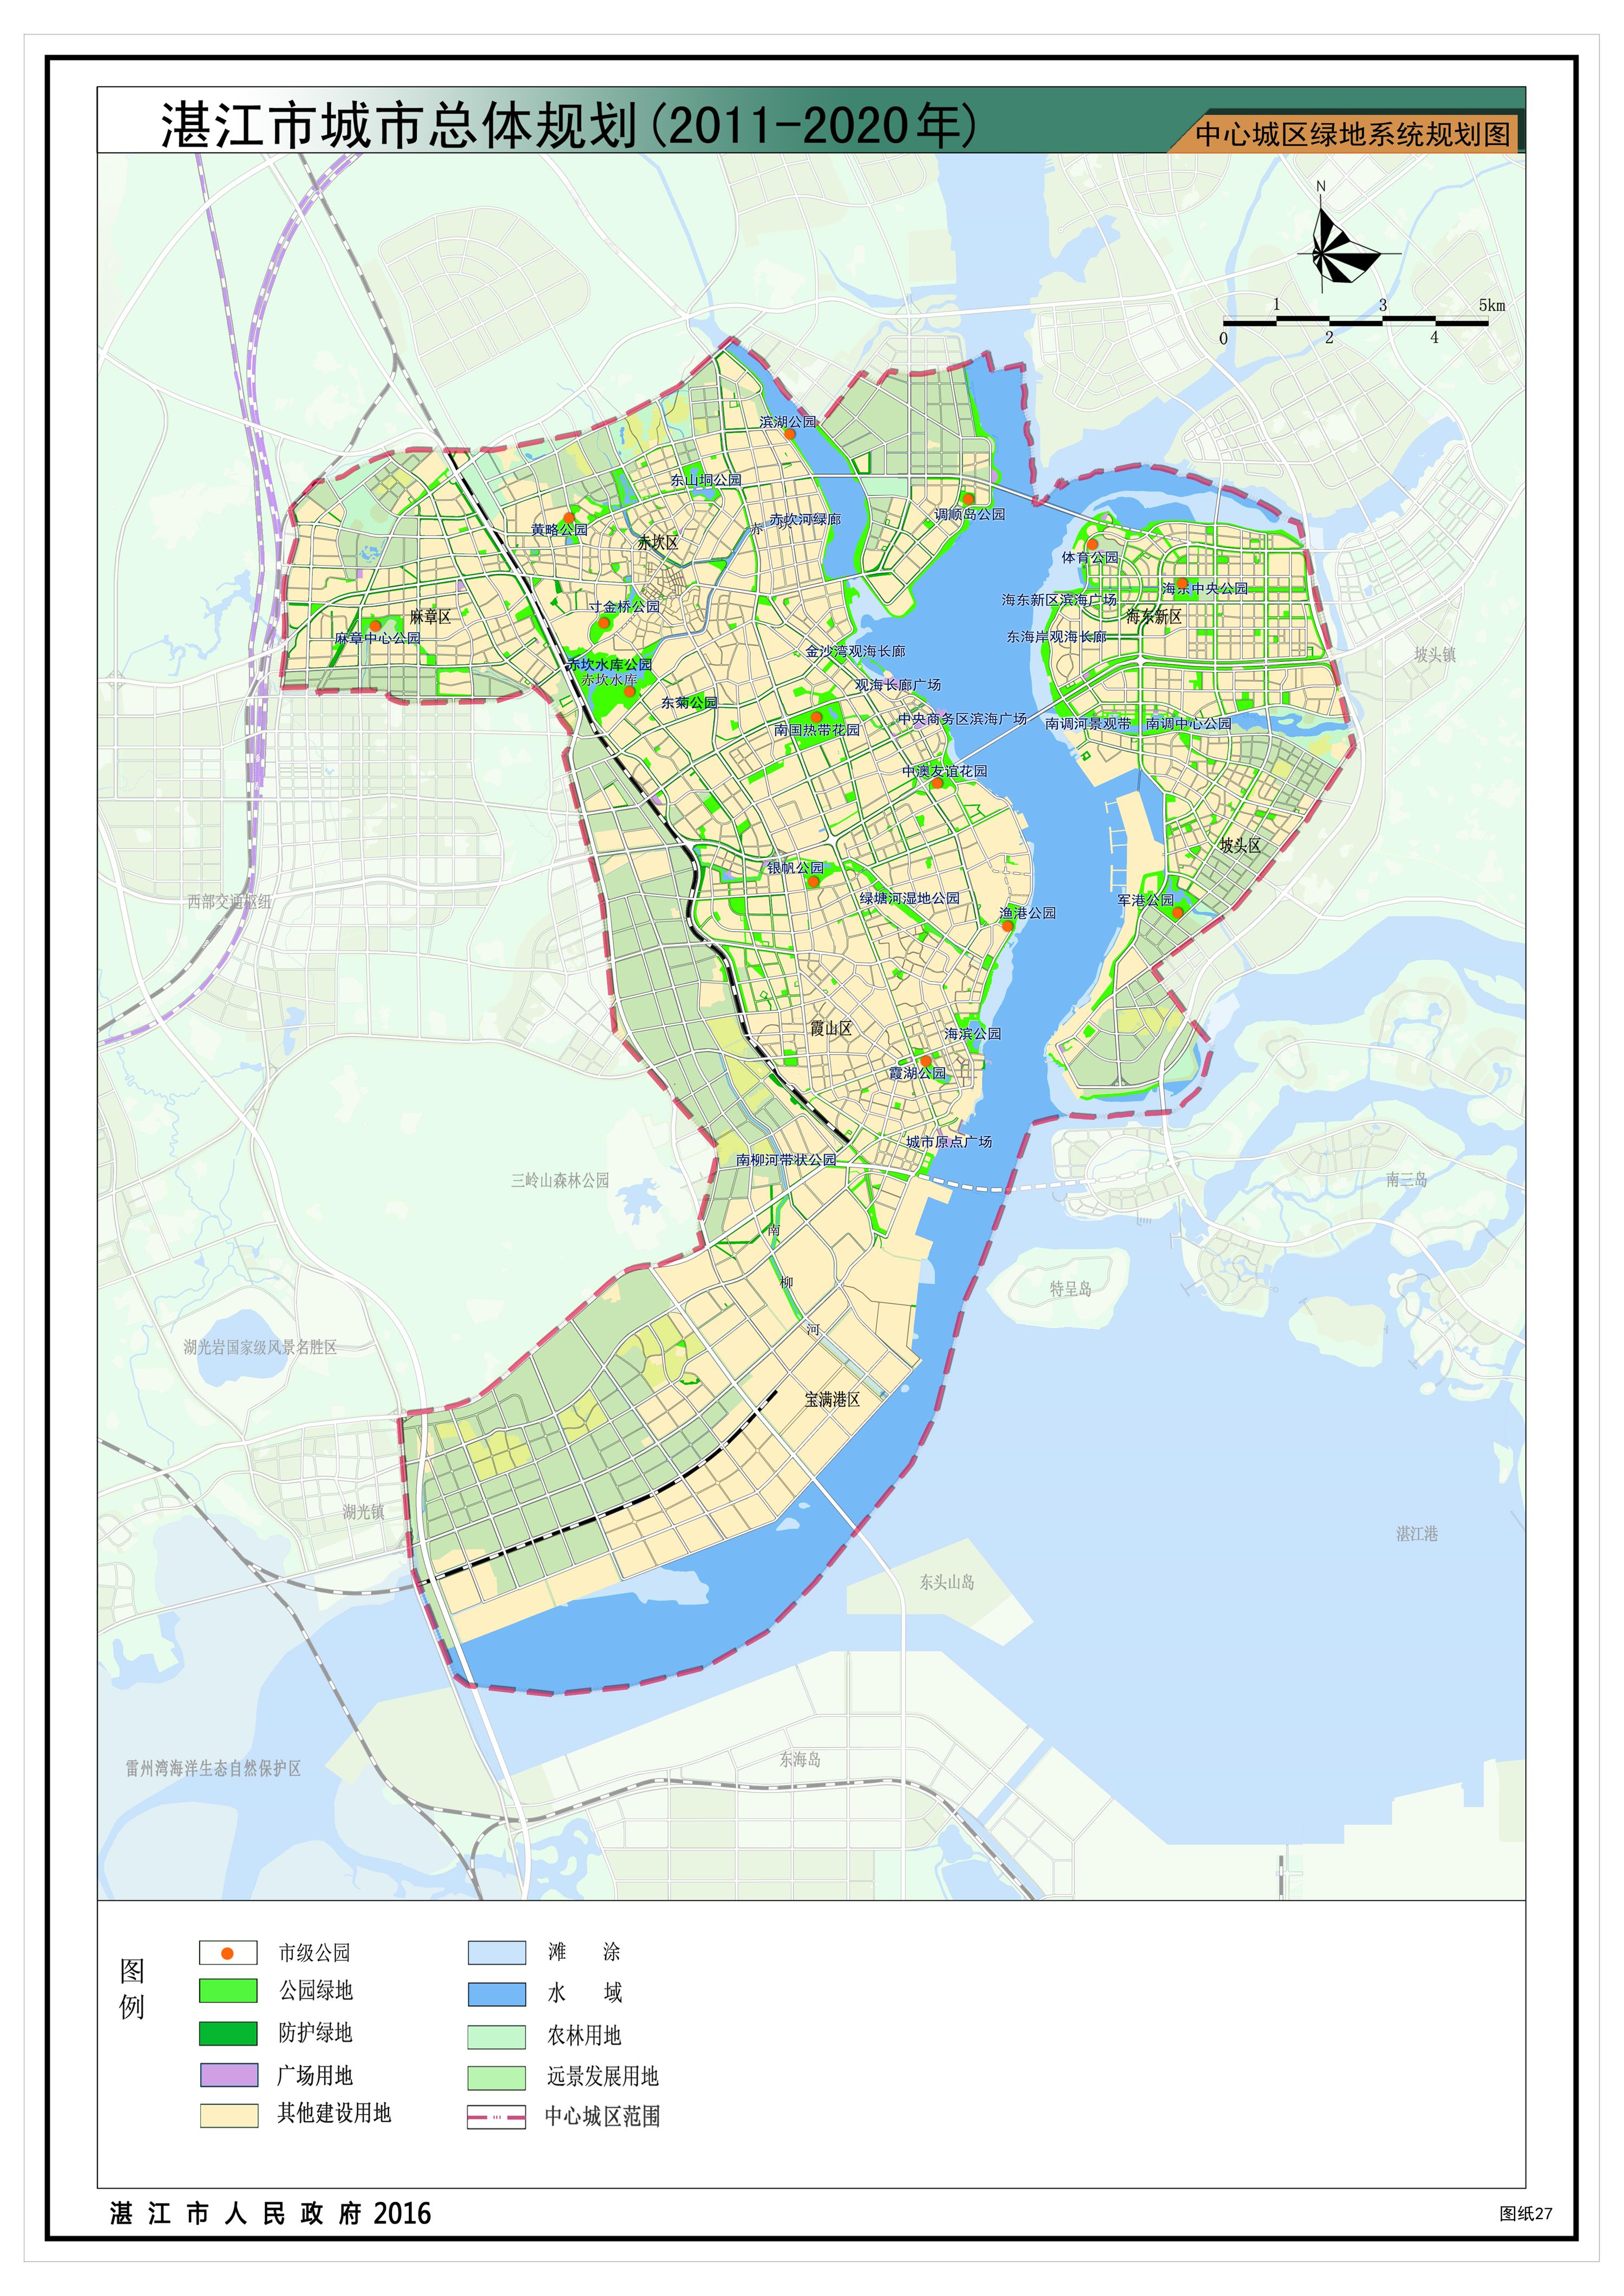 12中心城区绿地系统规划图.jpg